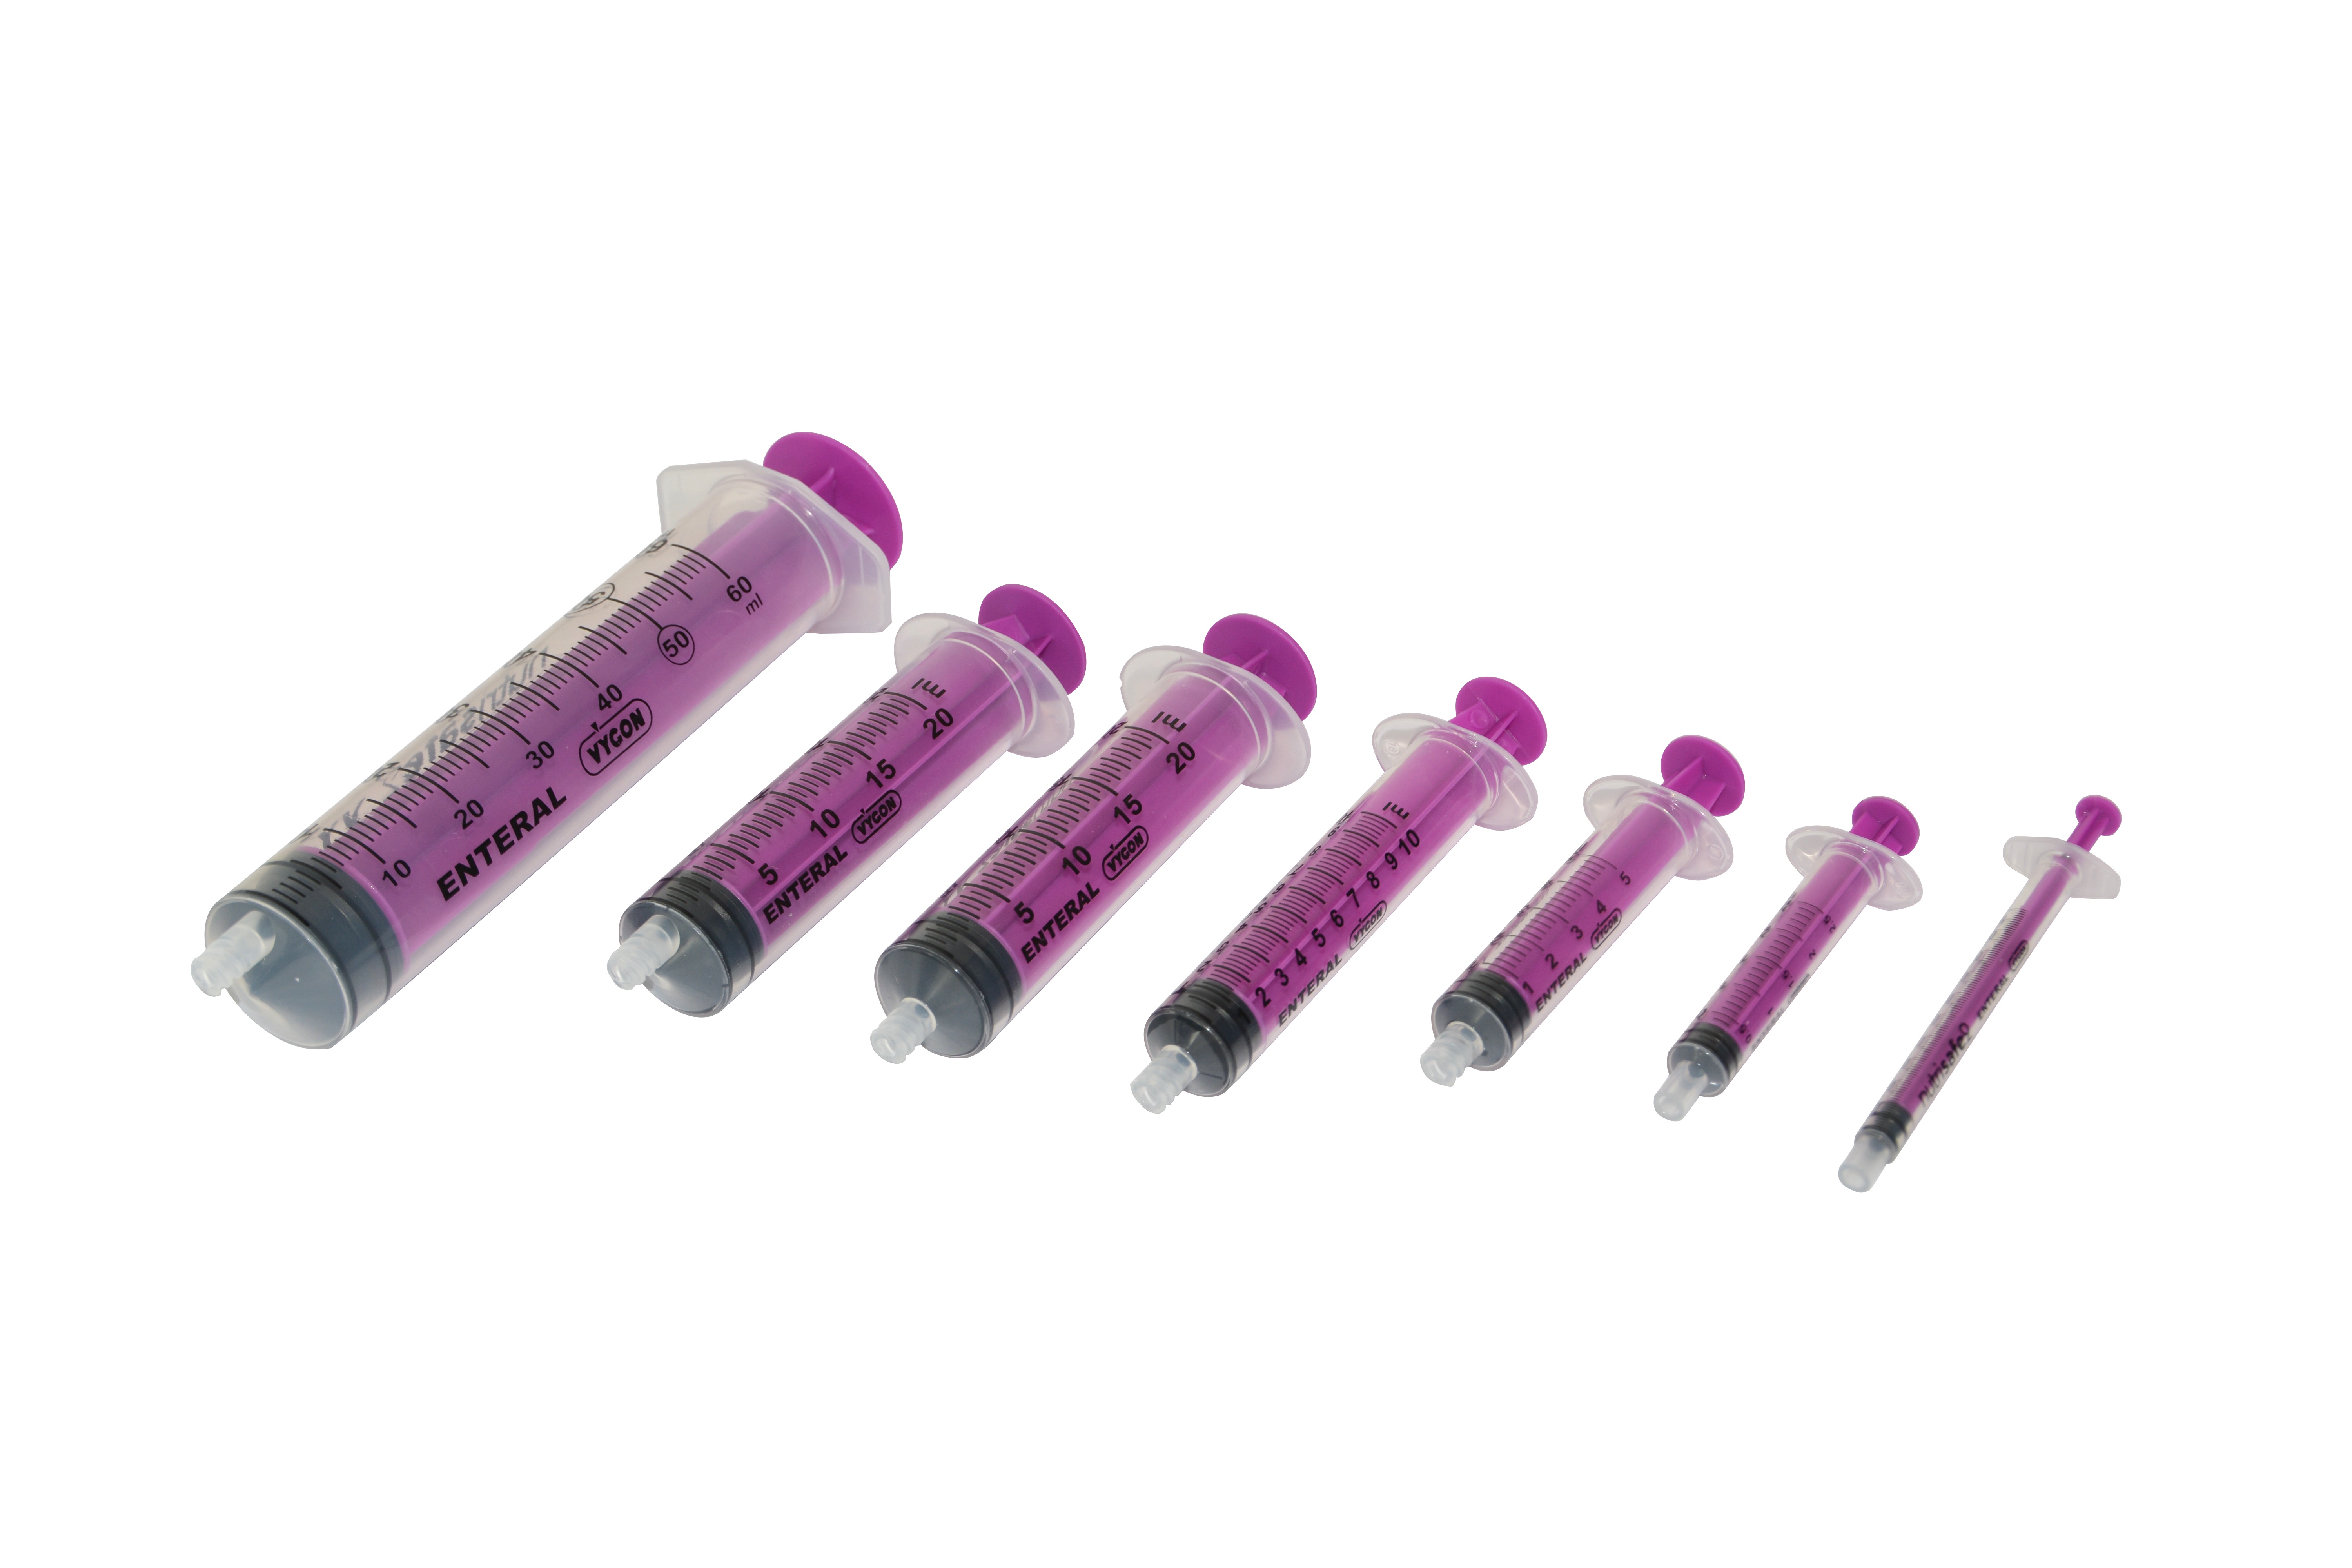 VY-P Nutrisafe2 reusable enteral syringe